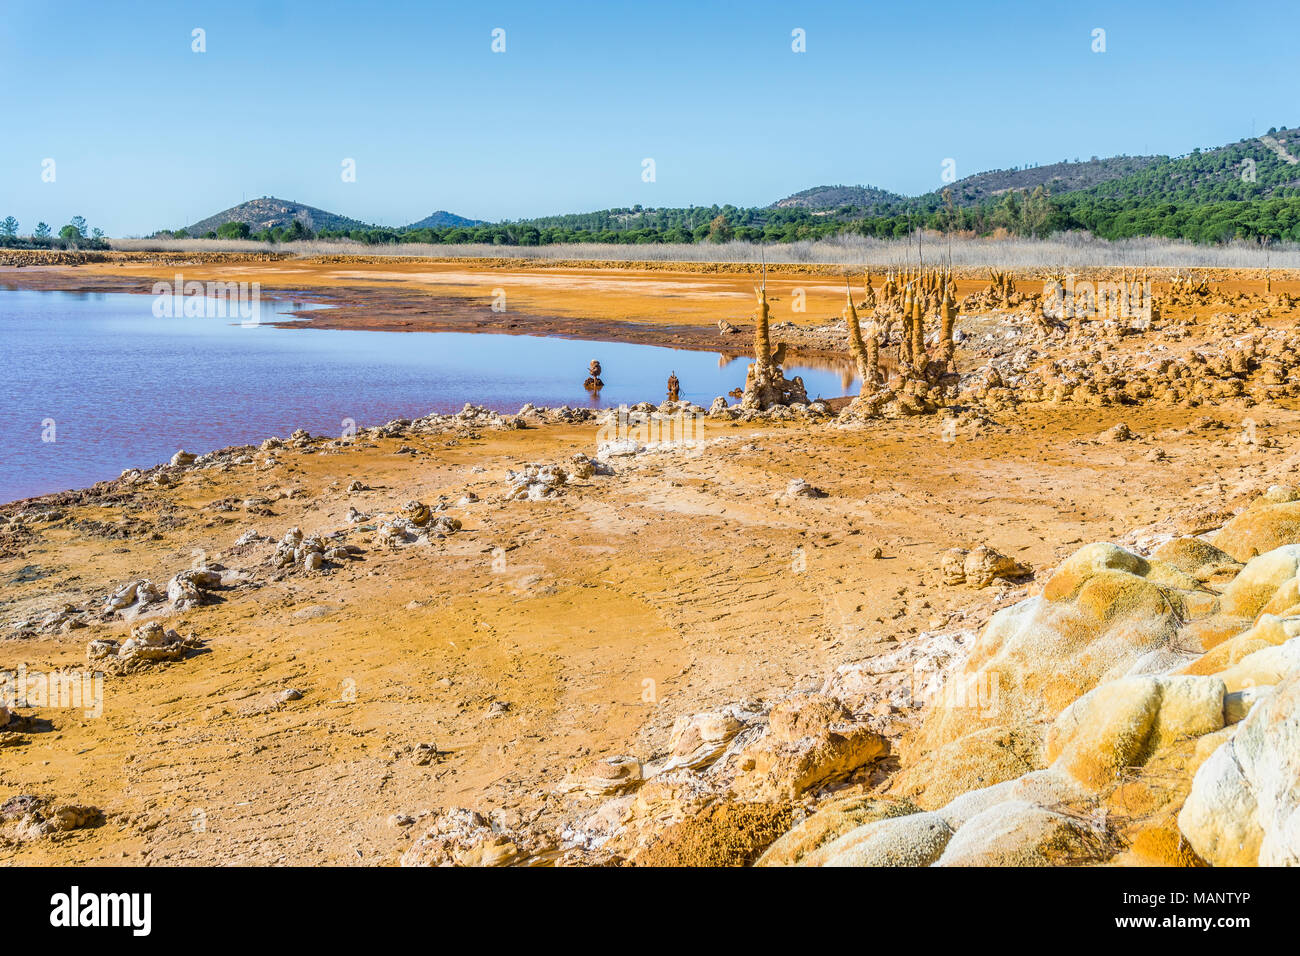 Chapeau de réservoir avec stalagmites orange sur la rive, Huelva, Andalousie, Espagne Banque D'Images